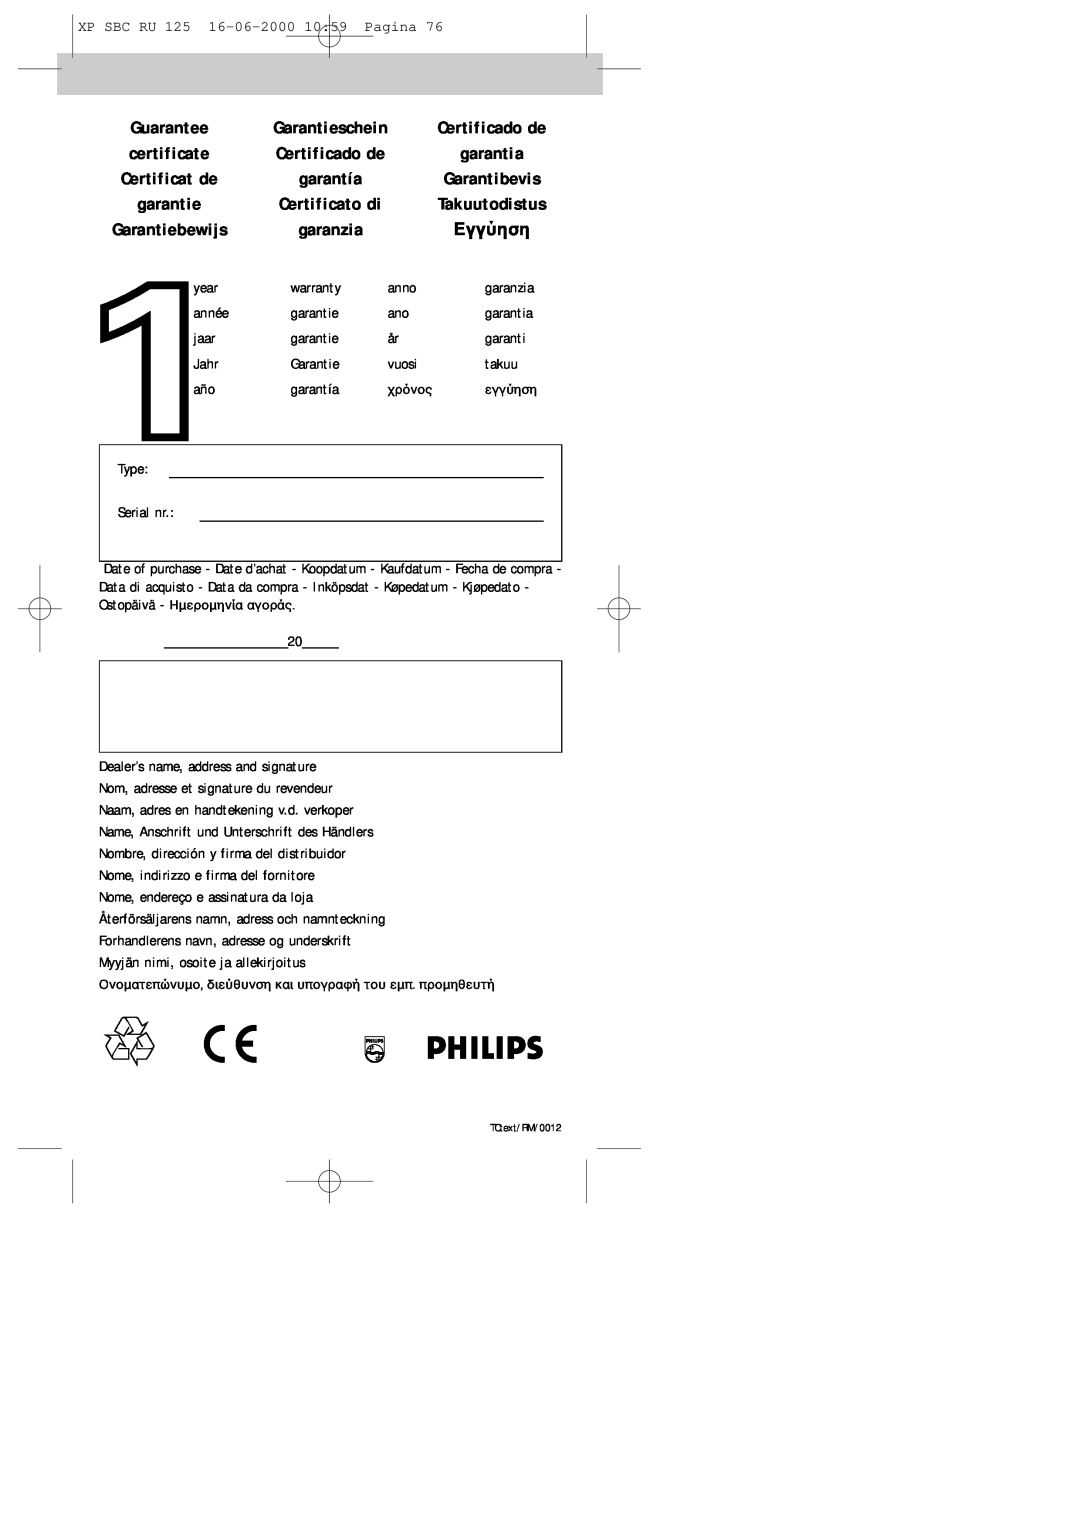 Philips RU125 manual Certificado de, certificate, garantia, Certificat de, garantía, Garantibevis, garantie, Certificato di 